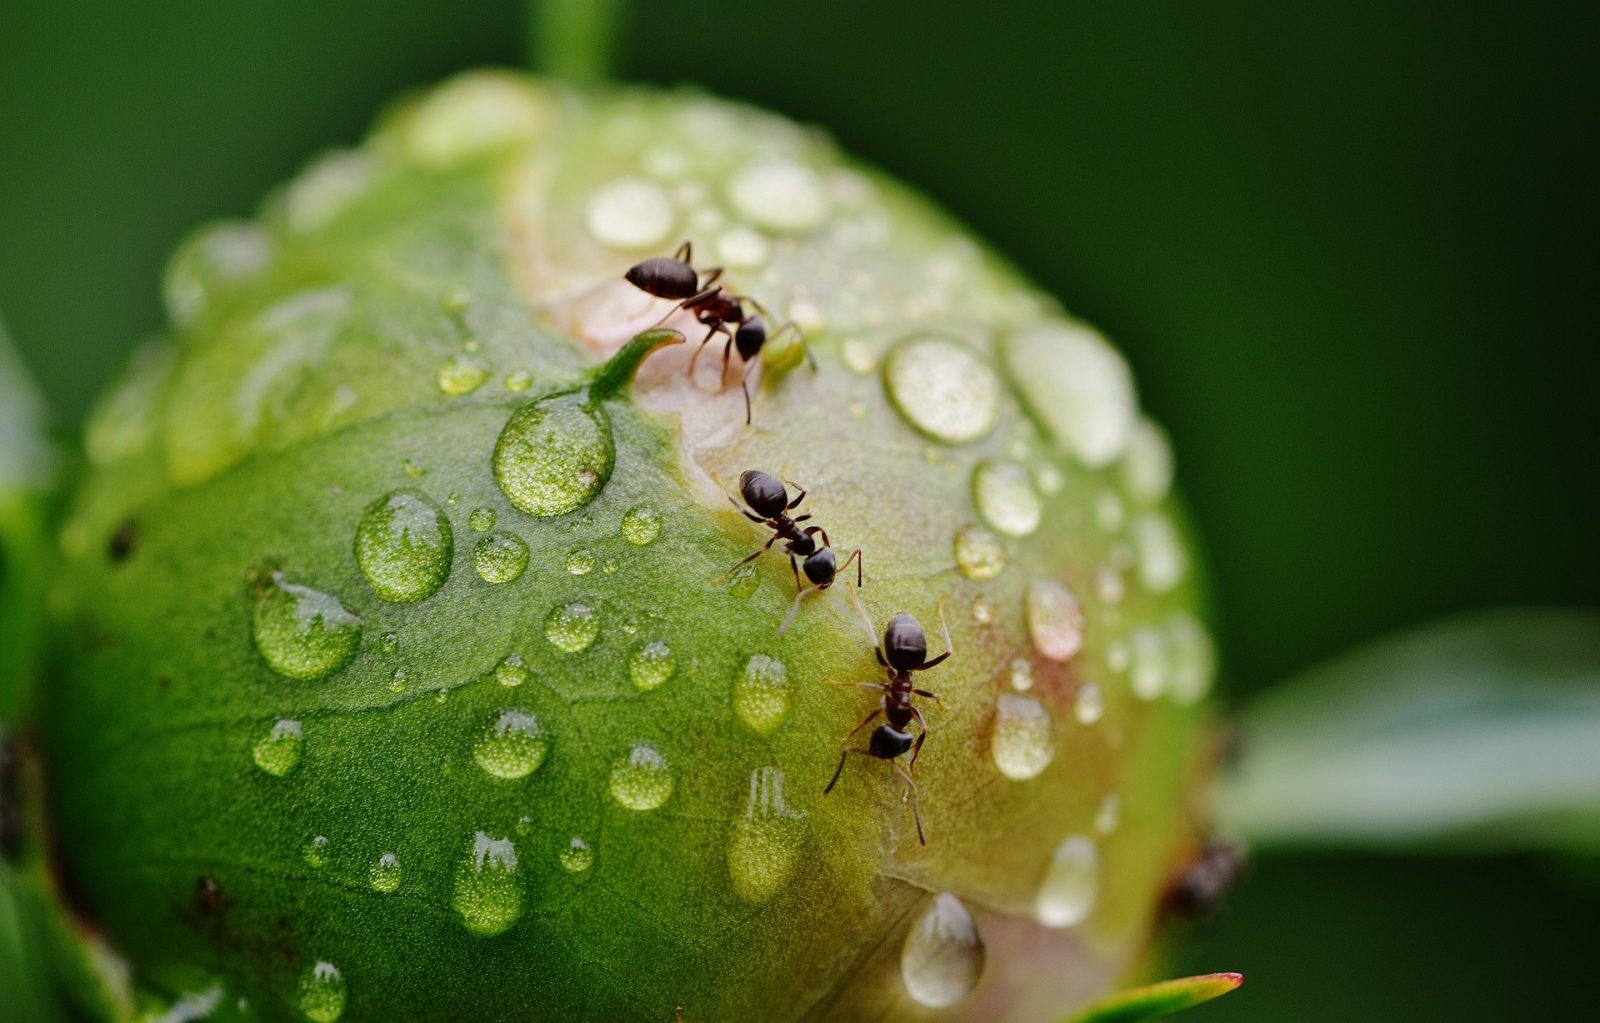 Mrówki to naprawdę fascynujące zwierzęta /Fot. Pixabay
